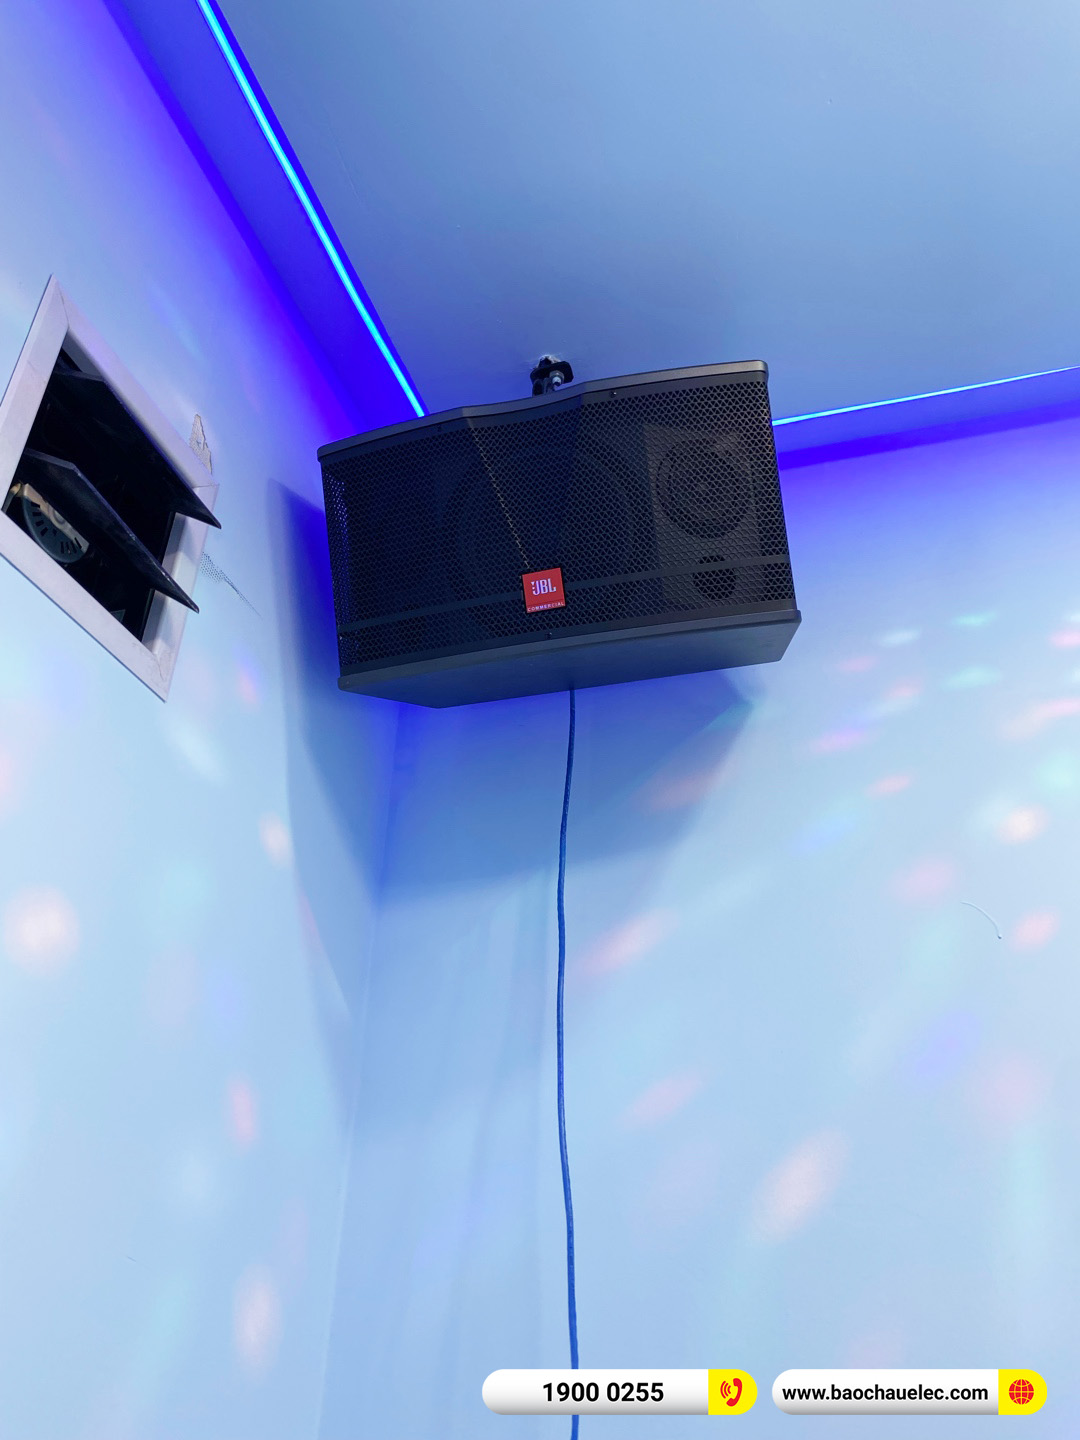 Lắp đặt 10 phòng karaoke box mini cho quán IKA Recording Studio tại Hà Nội 